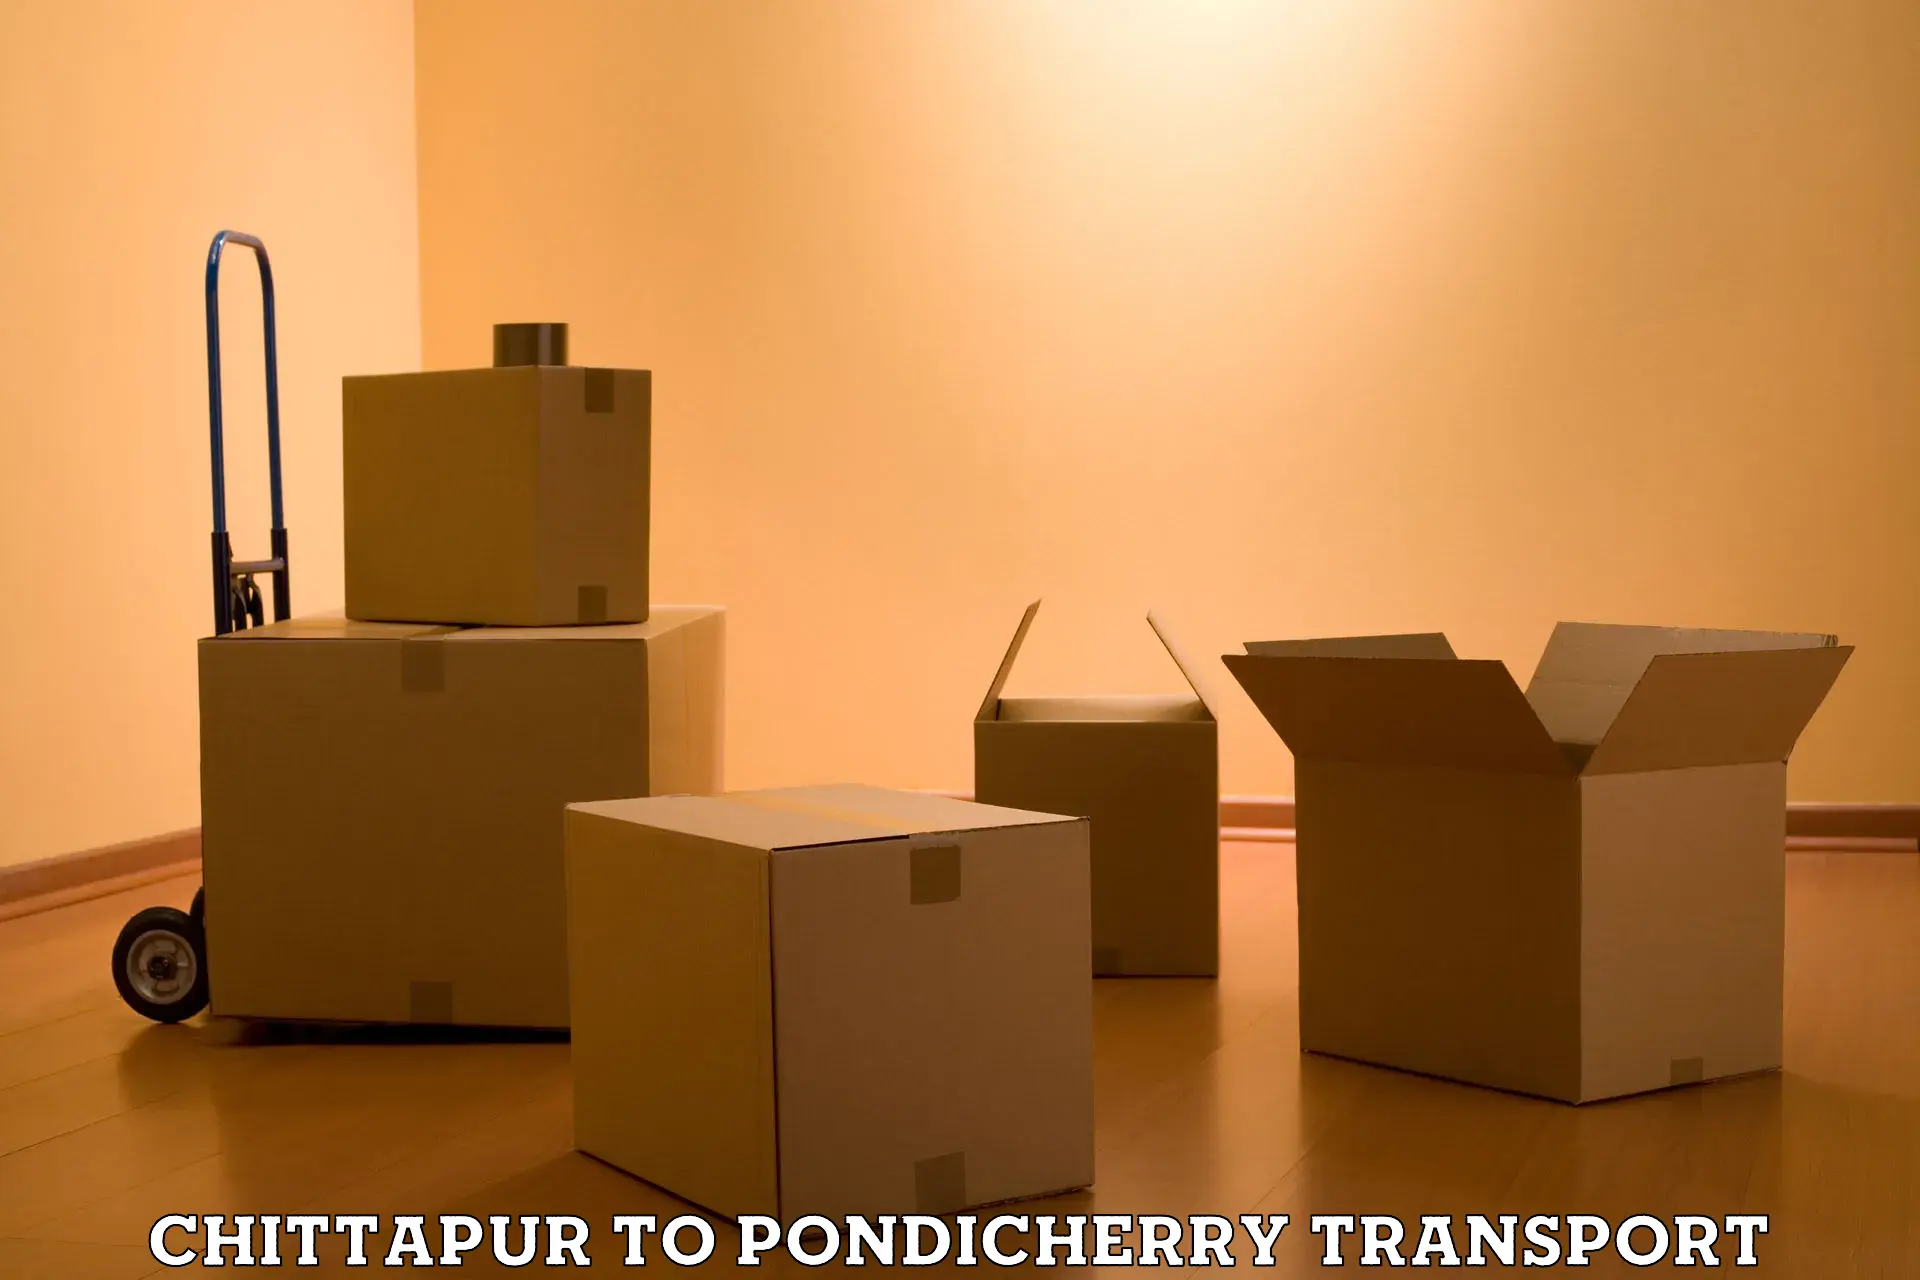 Online transport service Chittapur to Pondicherry